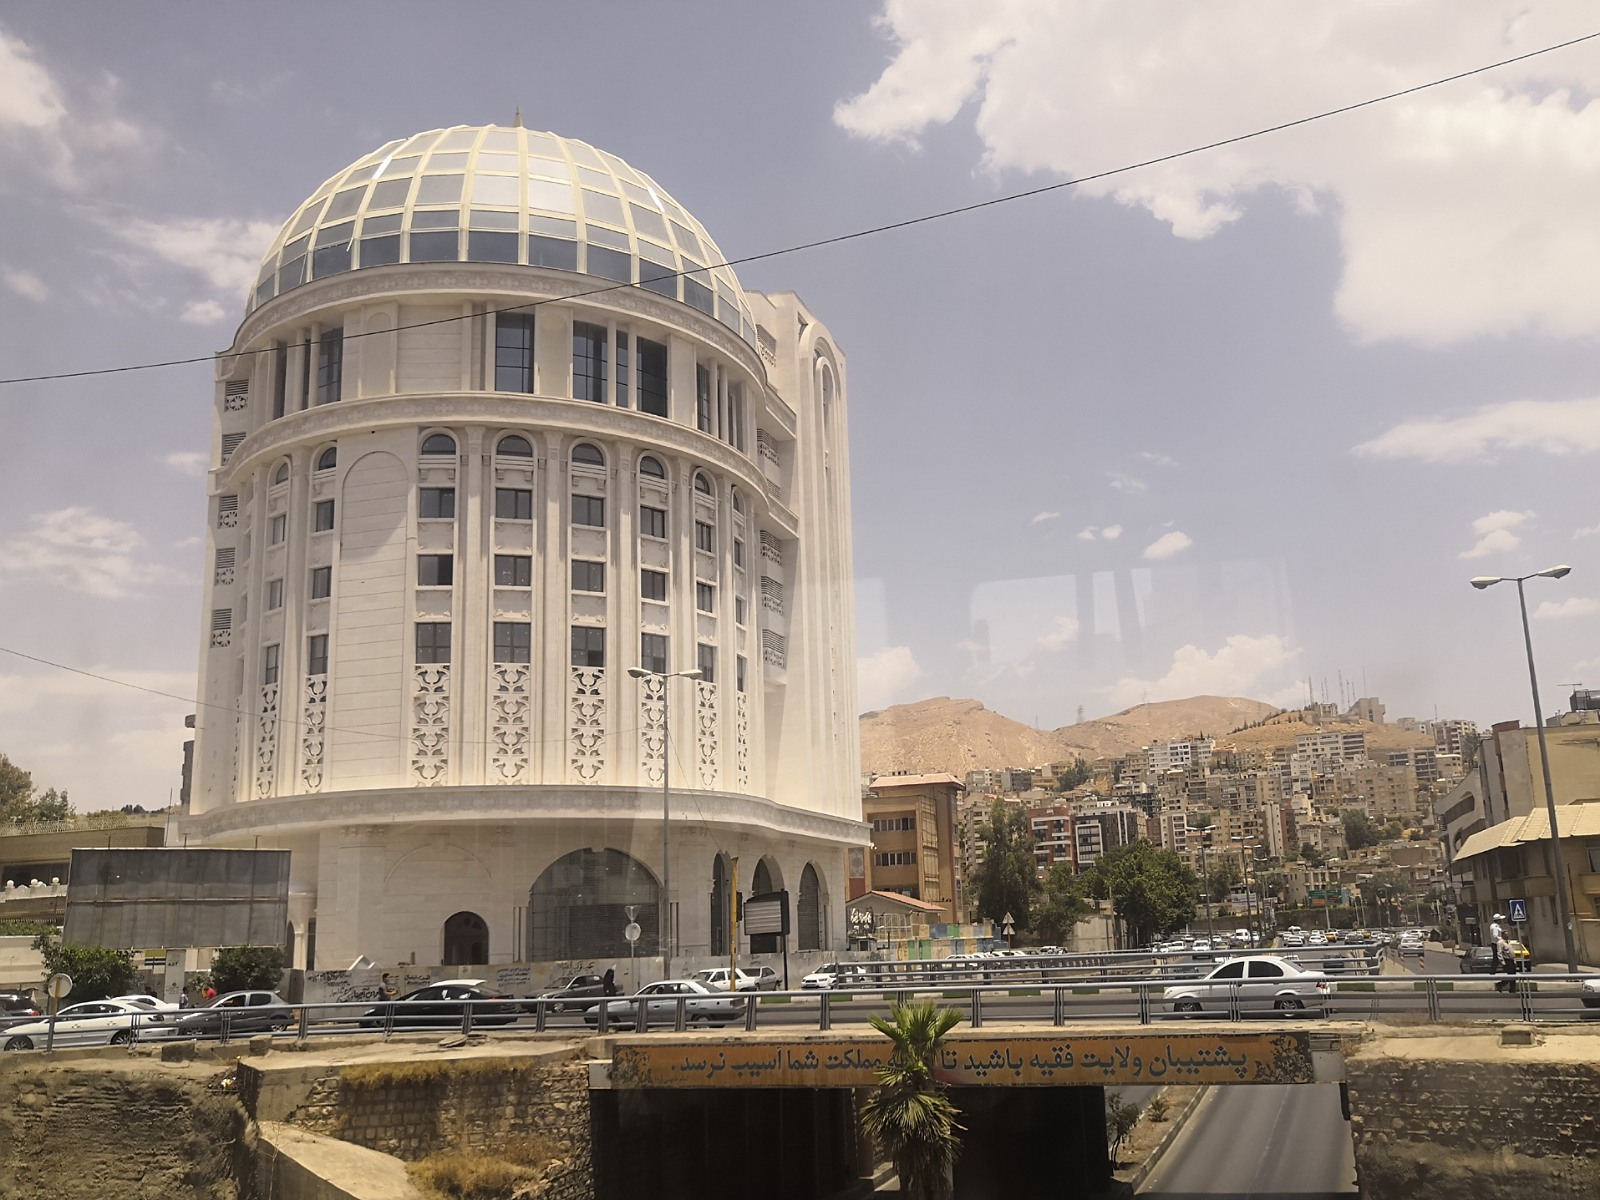 4. Niesamowity budynek w Szirazie w Iranie.